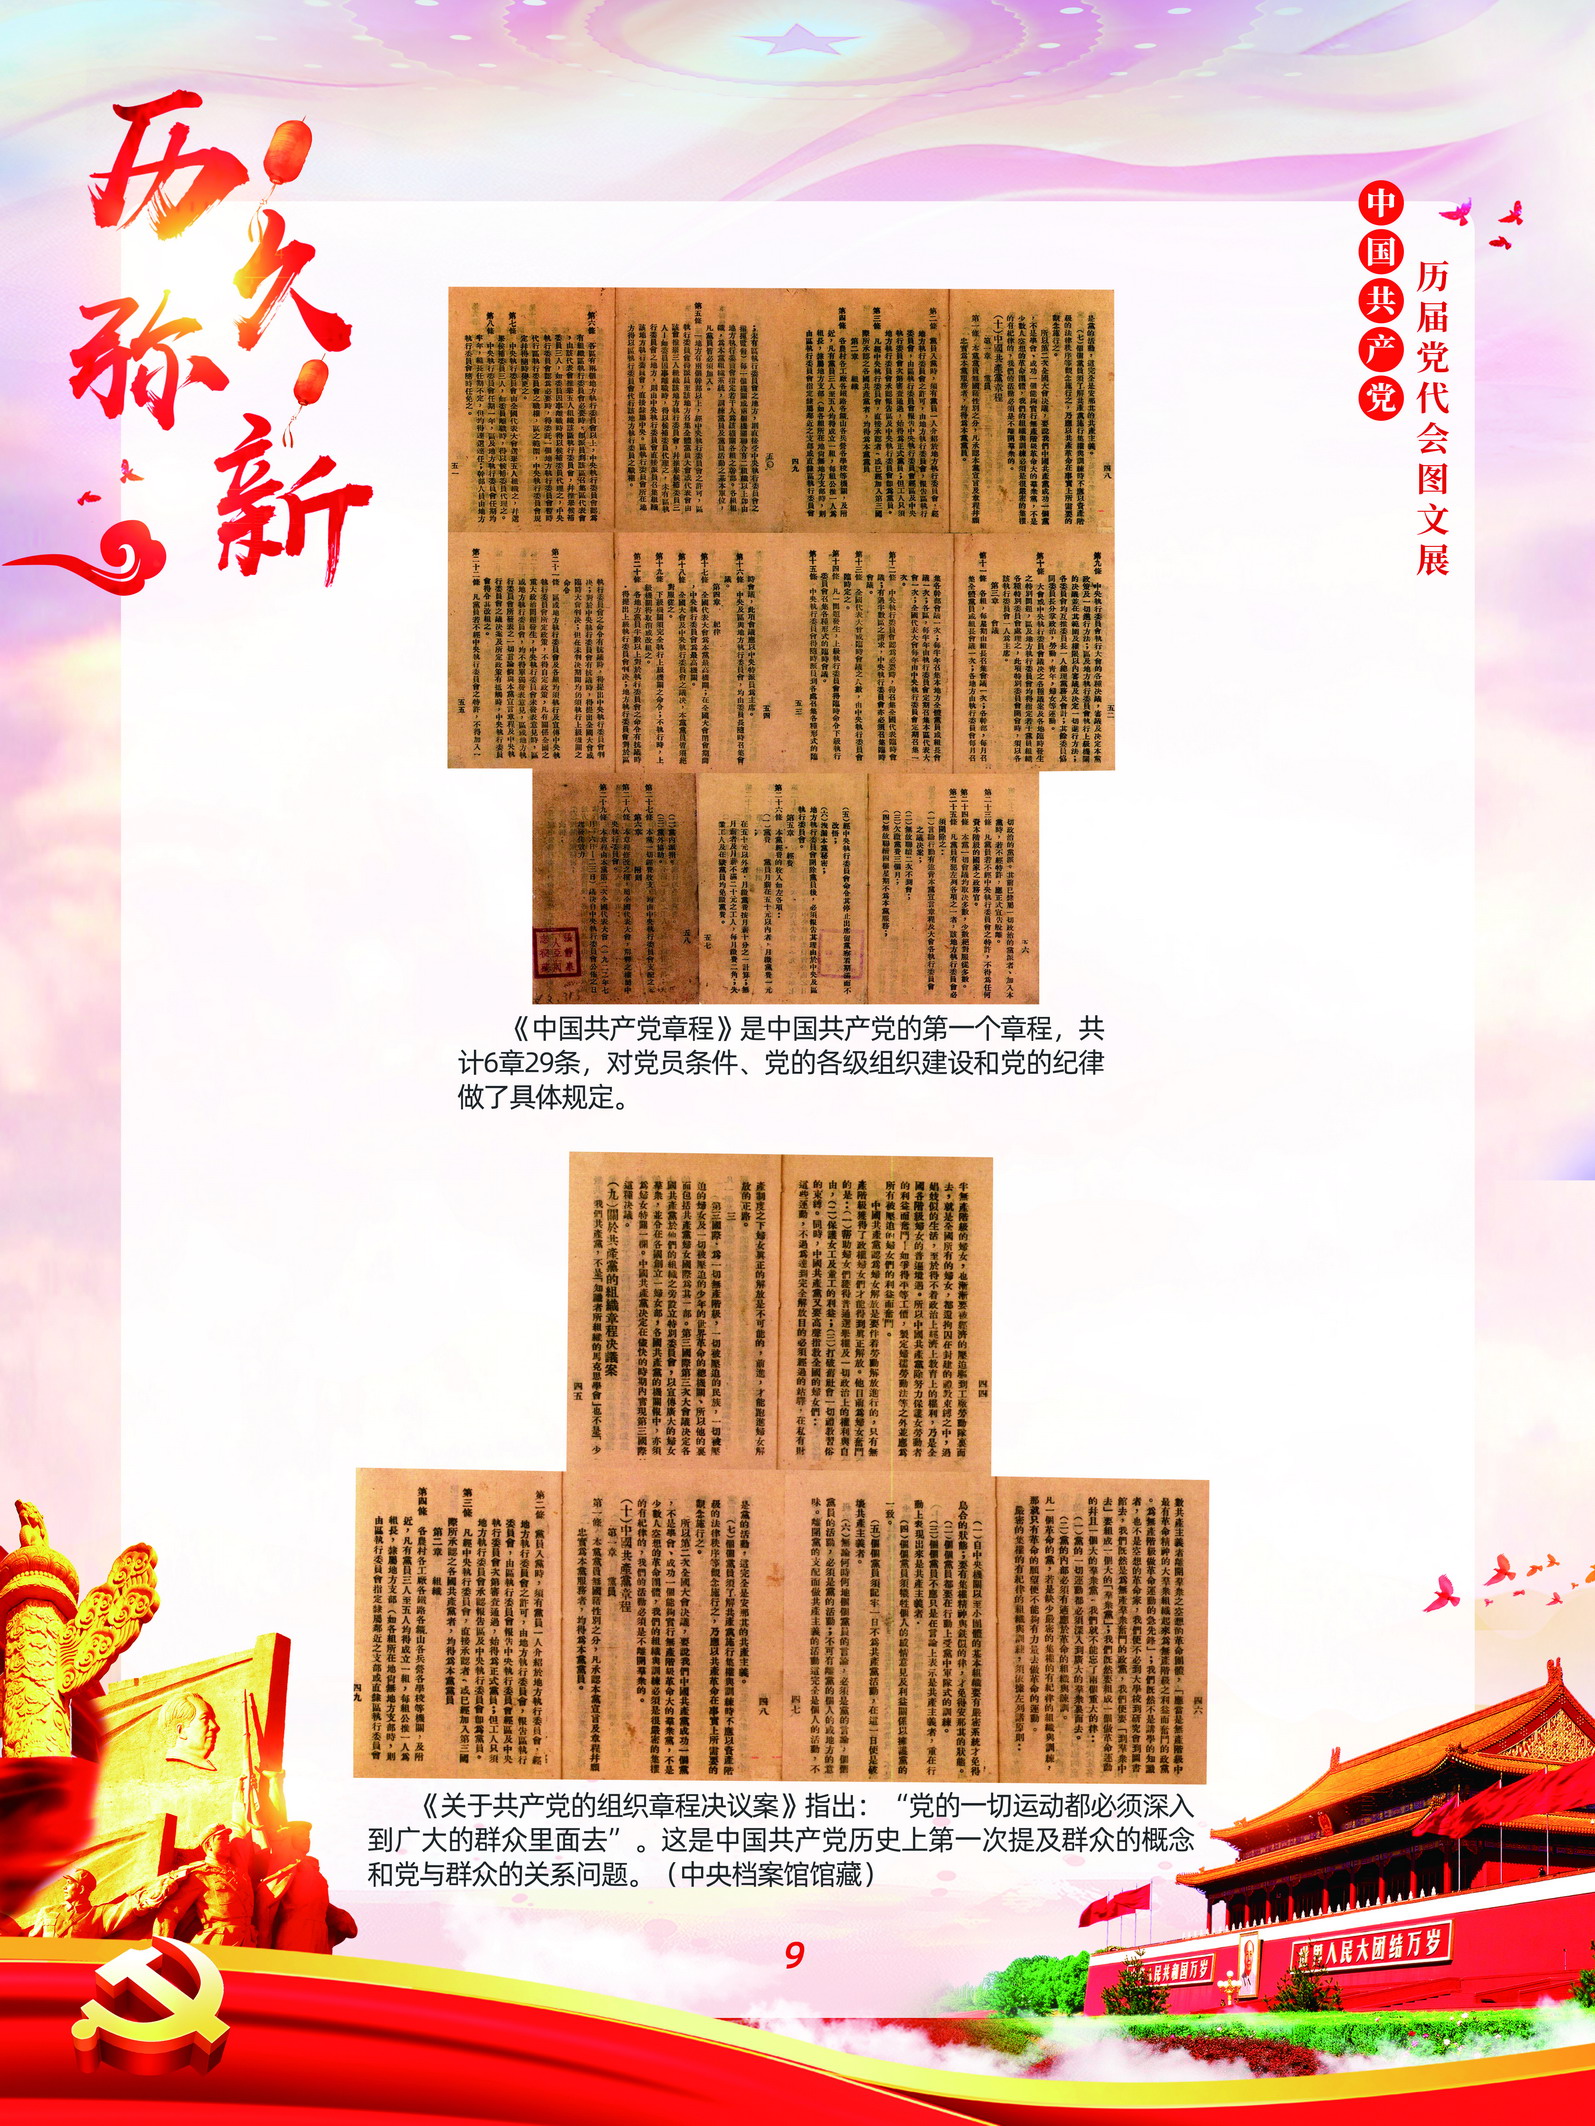 中国共产党历届党代会图文展_图8